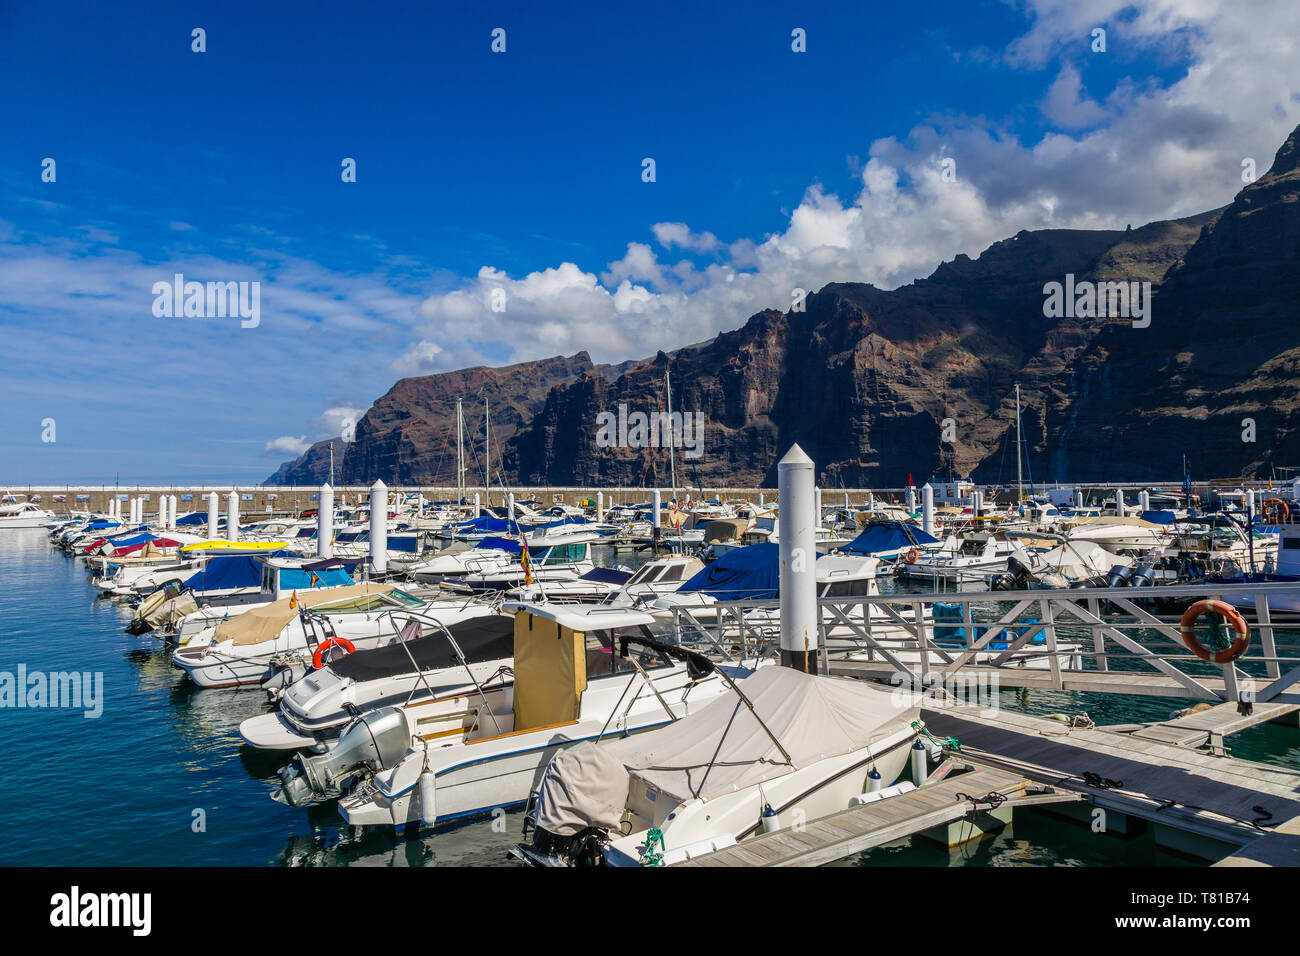 Puerto de Santiago und Los Gigantes im Hintergrund, Teneriffa, Kanarische Inseln, Spanien Stockfoto